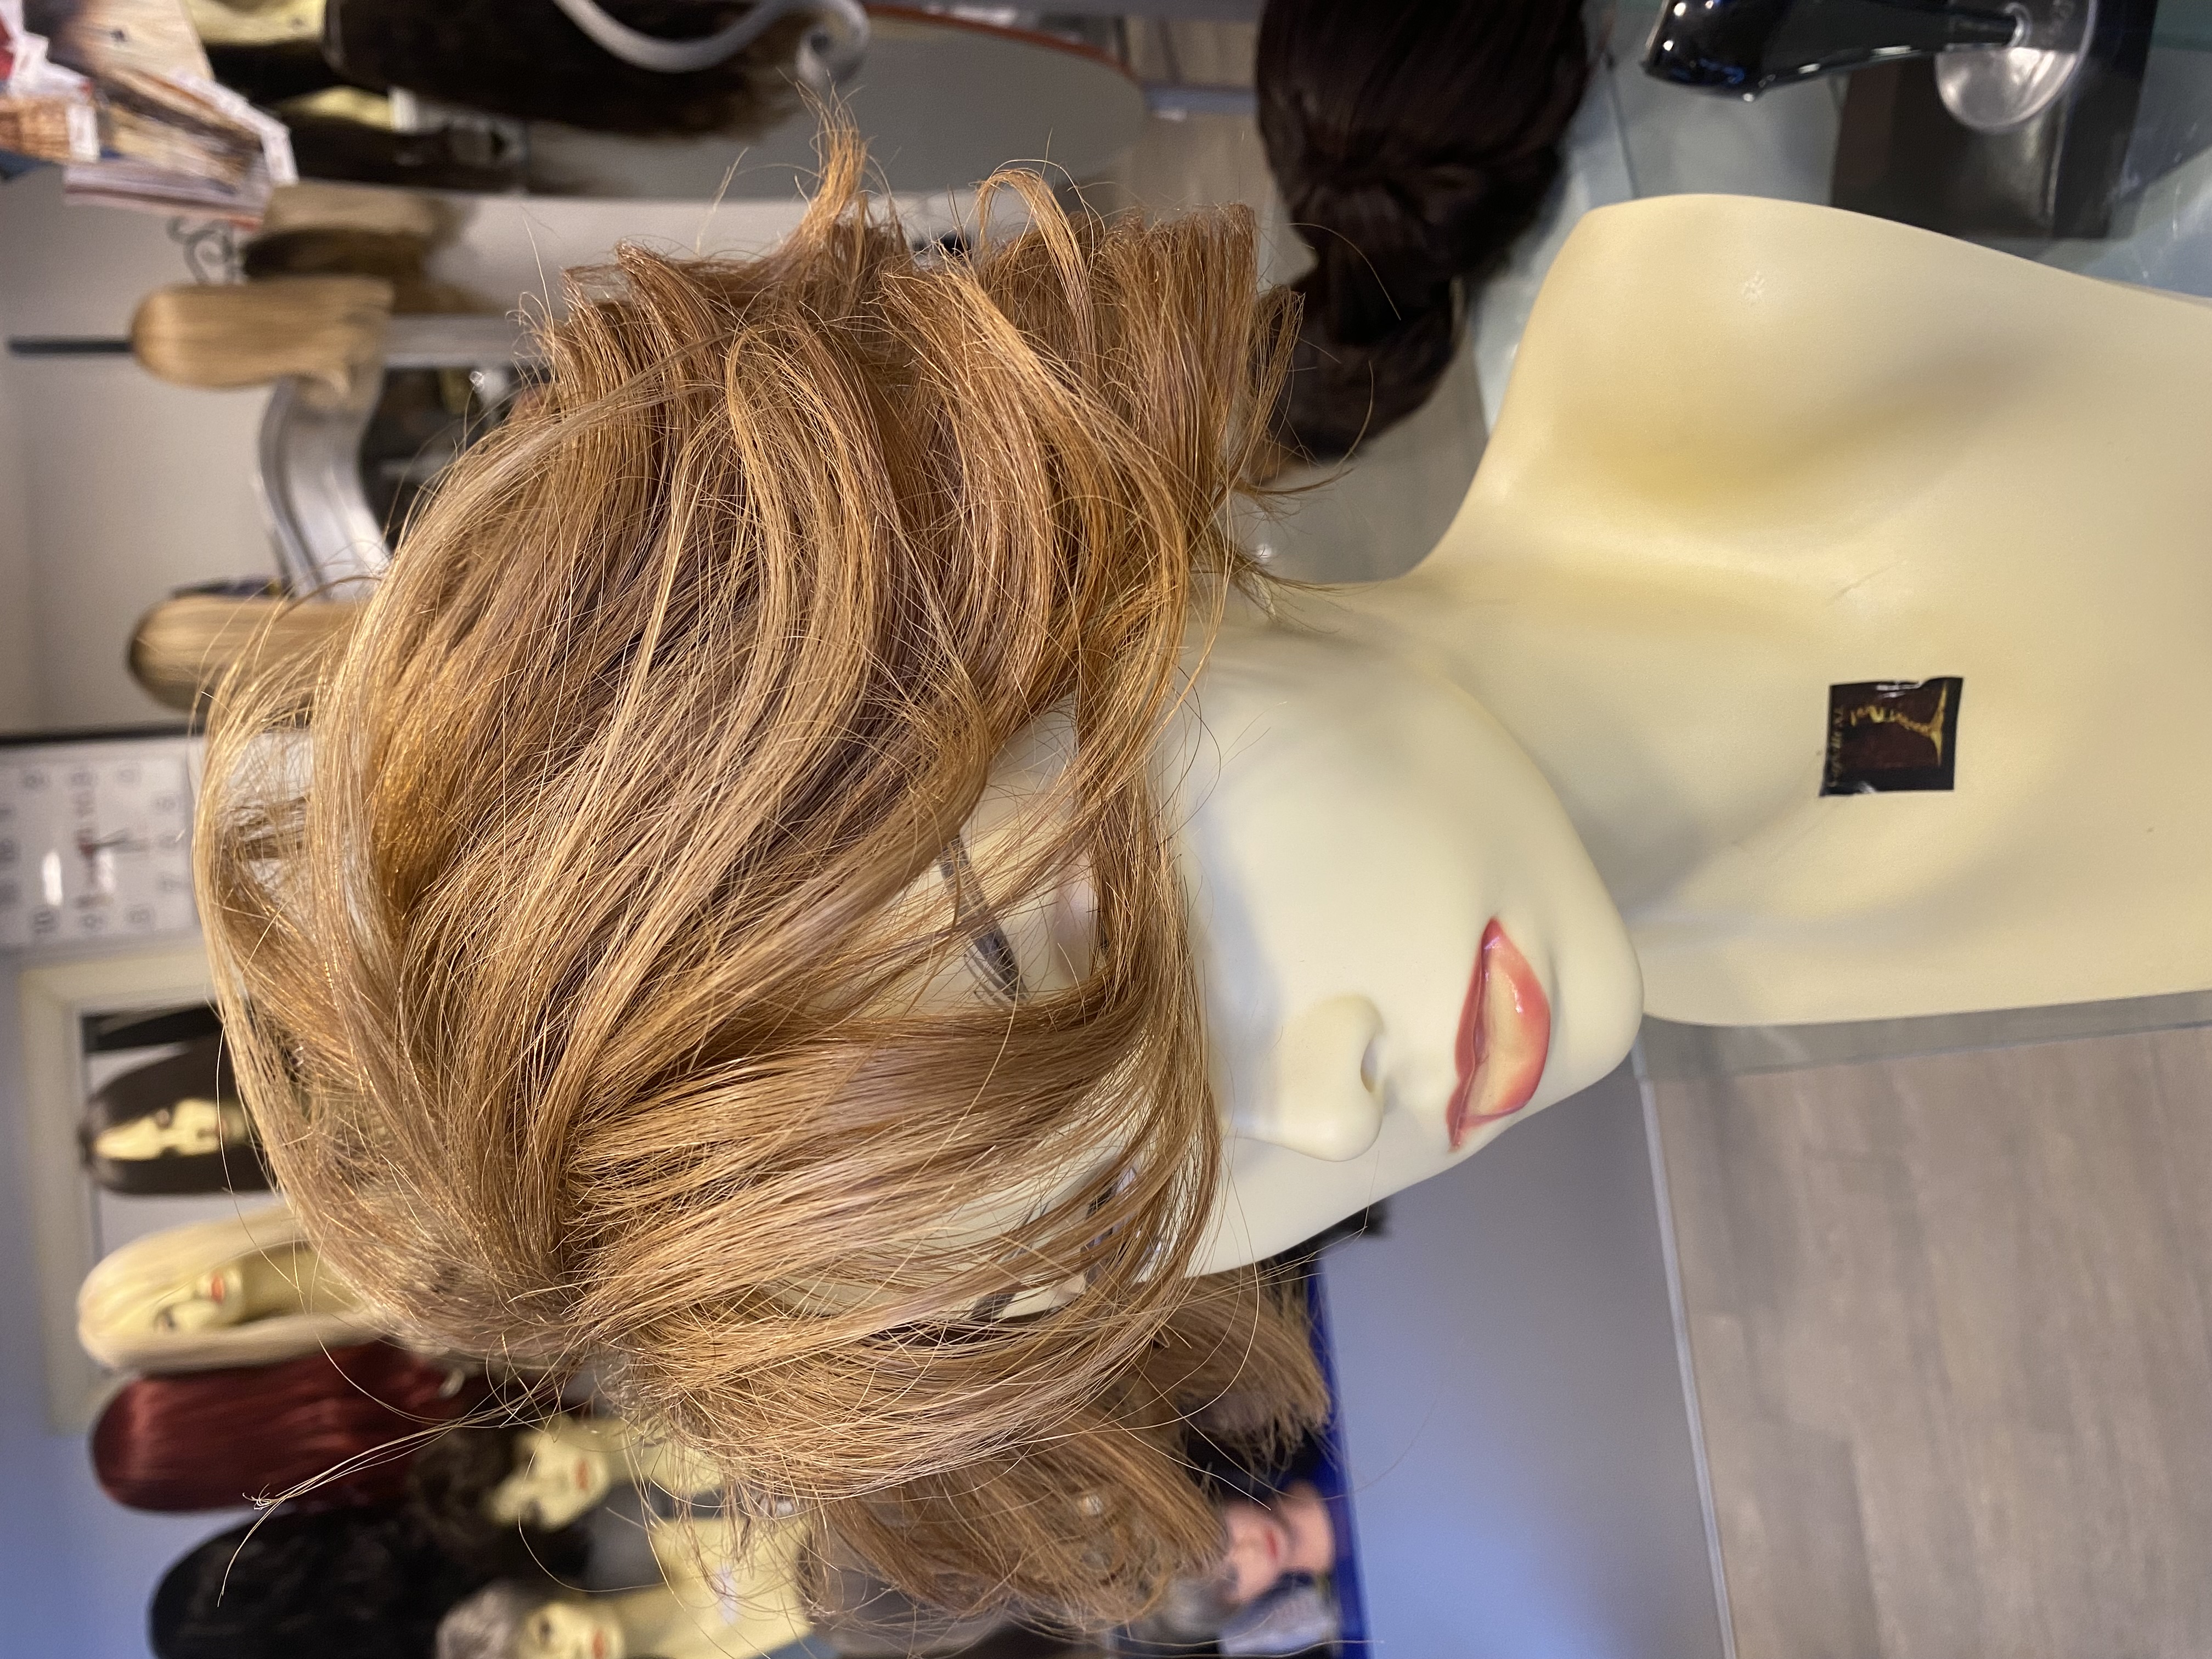 Infoltitore Toupet  calotta capelli veri remy biondi di origine Europei Per coprire la parte alta della testa e creare copertura con effetto naturale